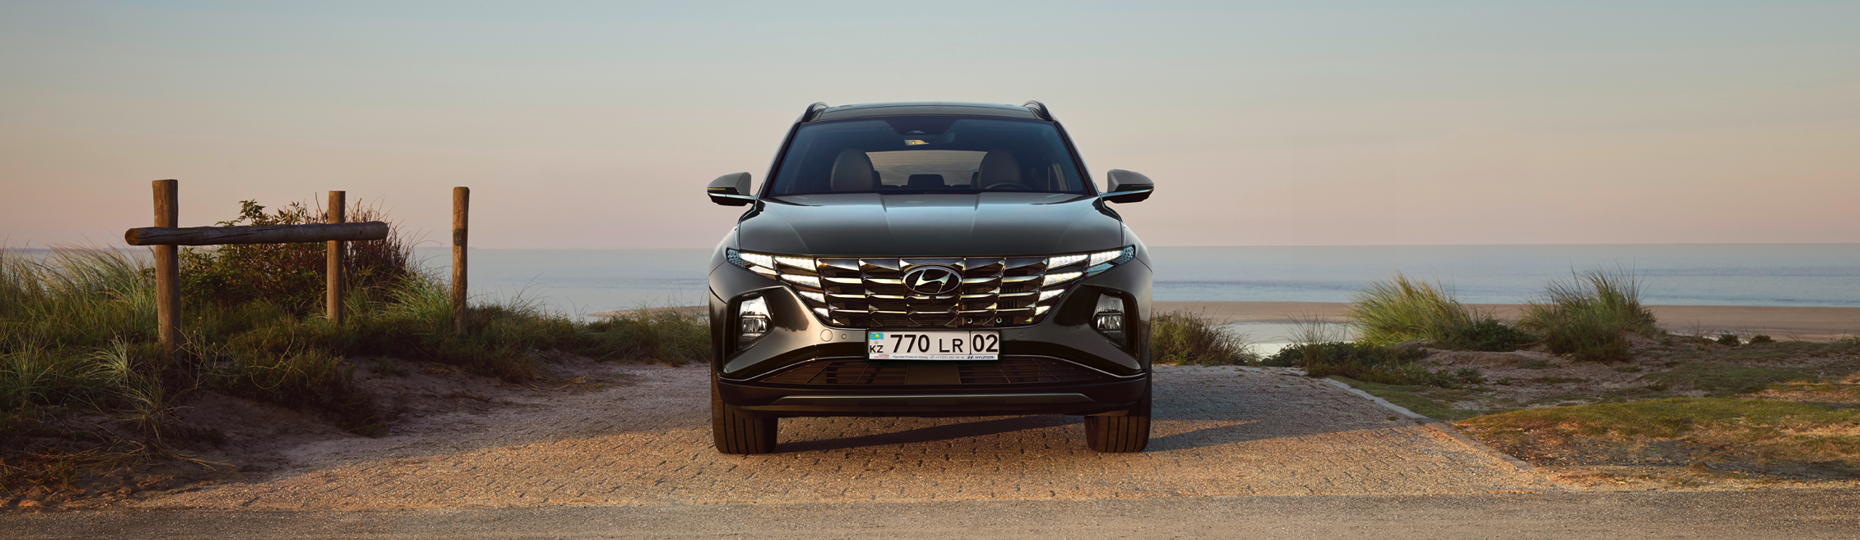 Жаңа Hyundai Tucson қауіпсіздігі | Астанадағы ресми дилер